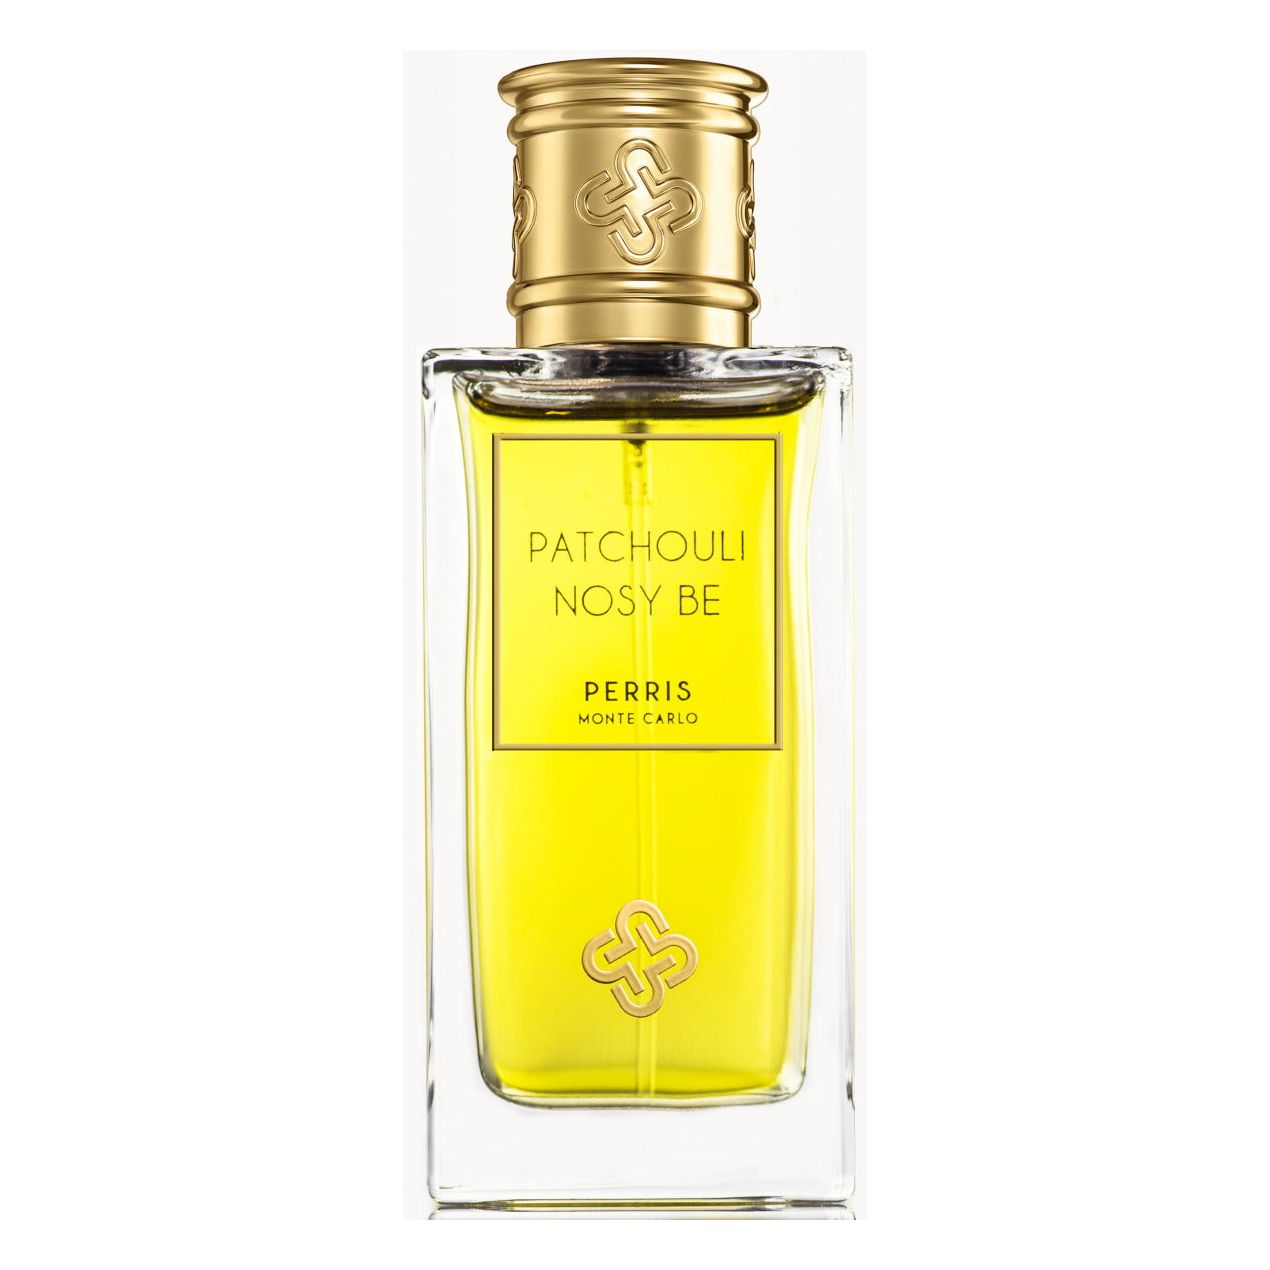 Perris Monte Carlo - Patchouli Nosy Be - Extrait de Parfum